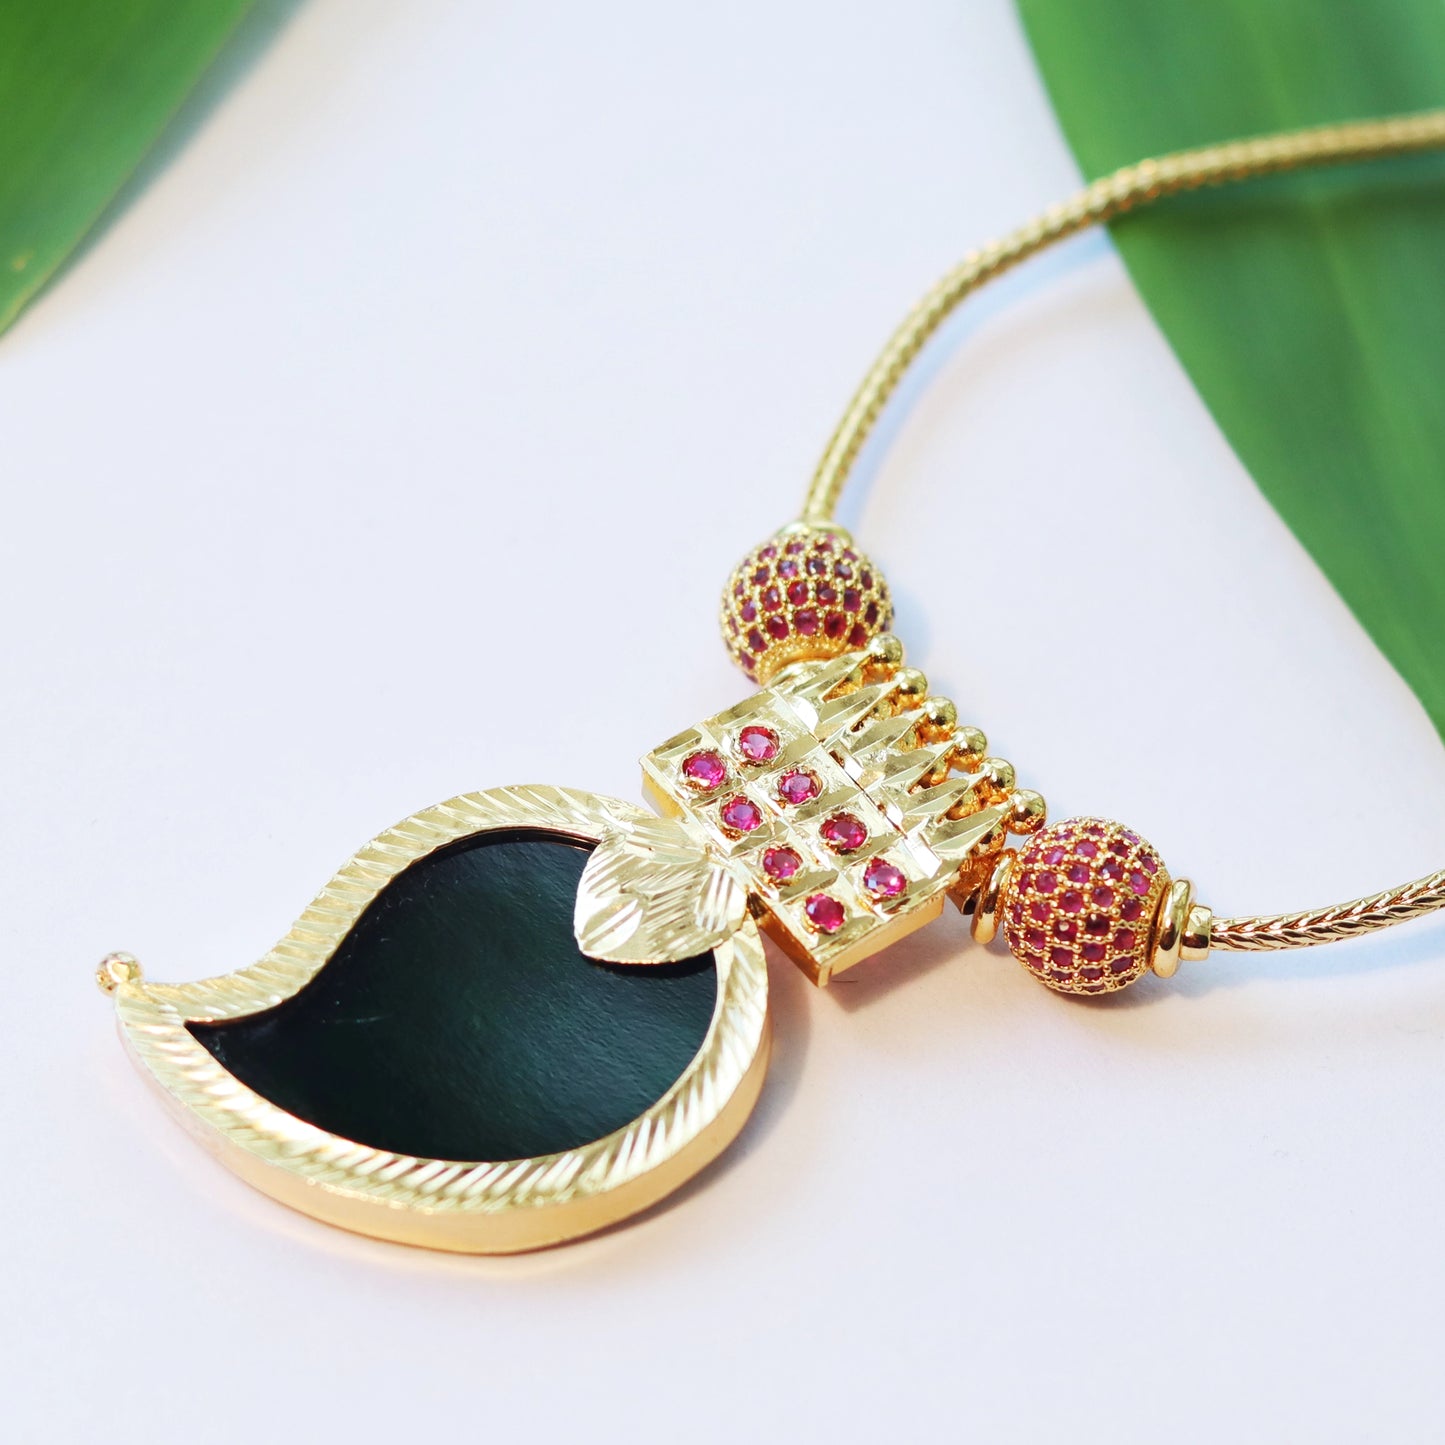 Kerala Palakka Necklace with Mango-shaped Pendant